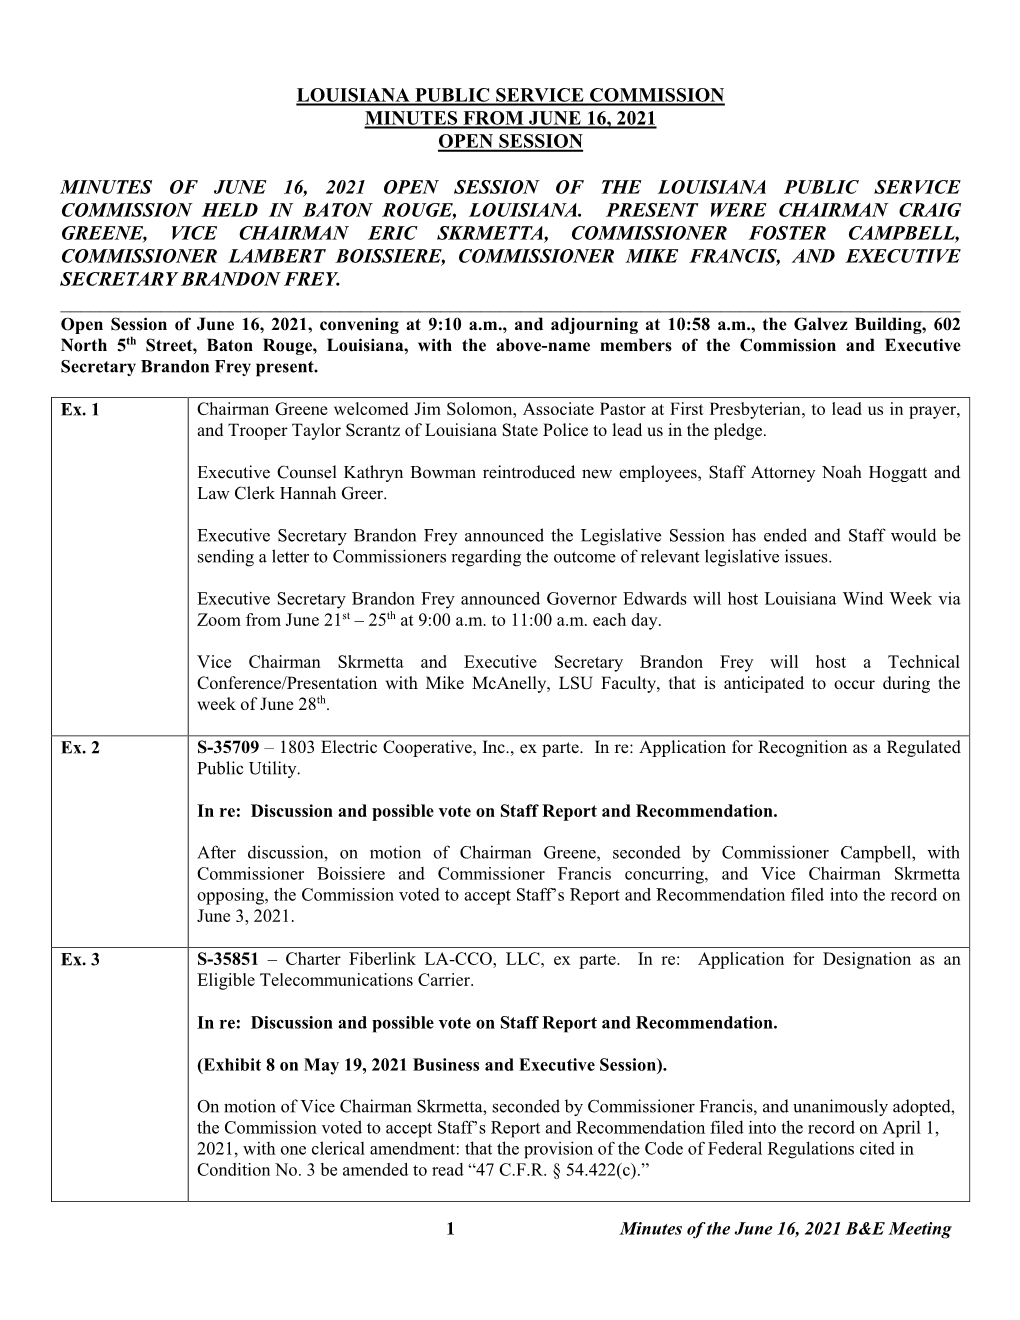 Louisiana Public Service Commission Minutes from June 16, 2021 Open Session Minutes of June 16, 2021 Open Session of the Louisia